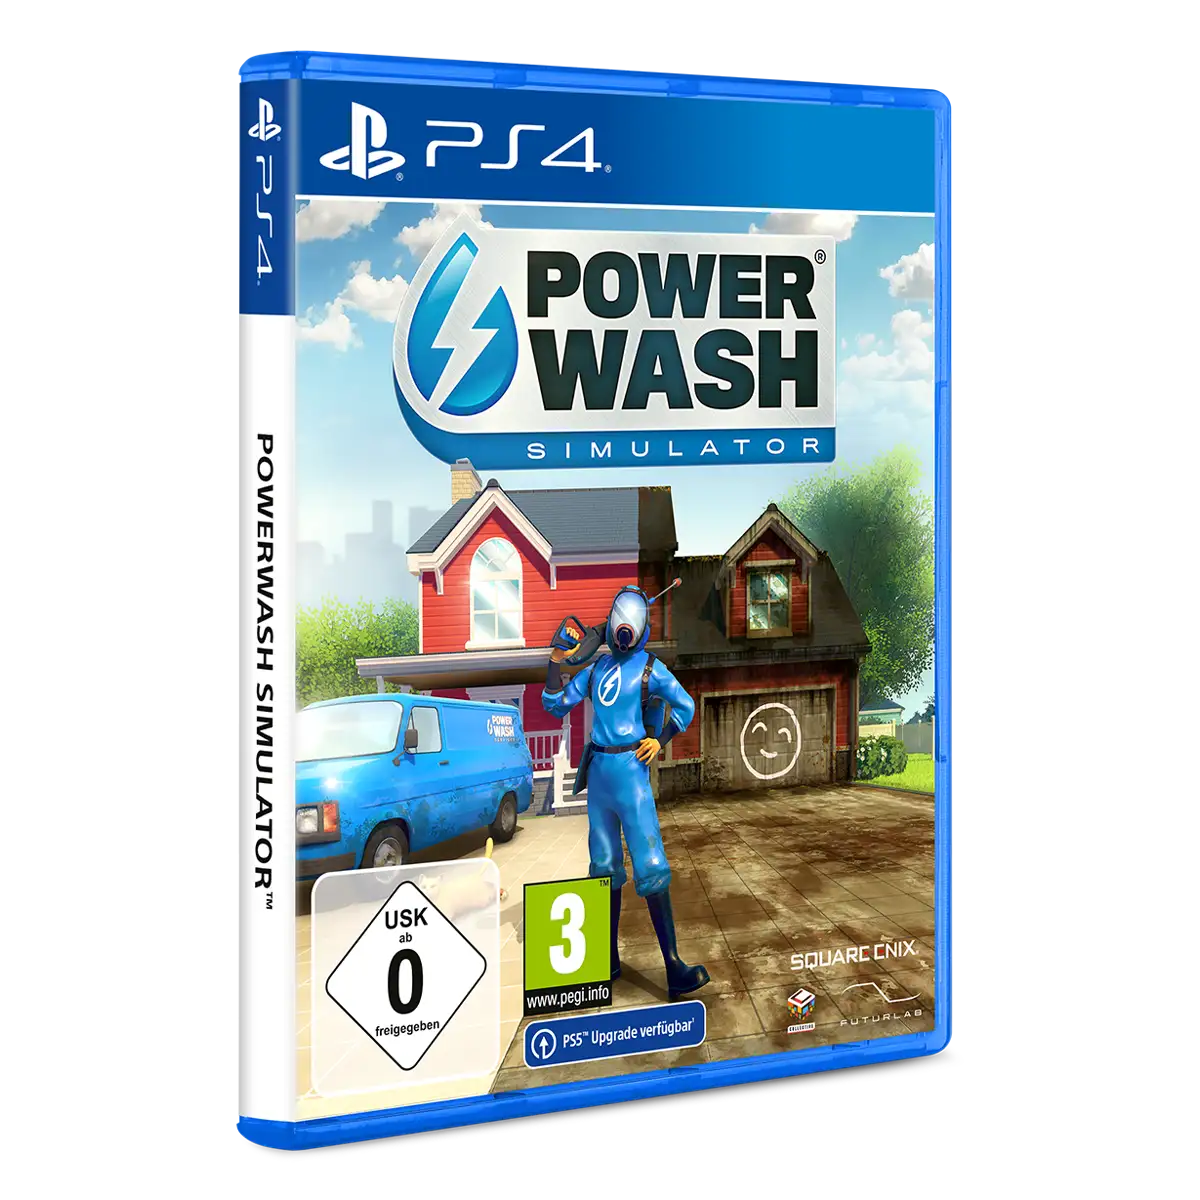  PowerWash Simulator - Xbox Series X